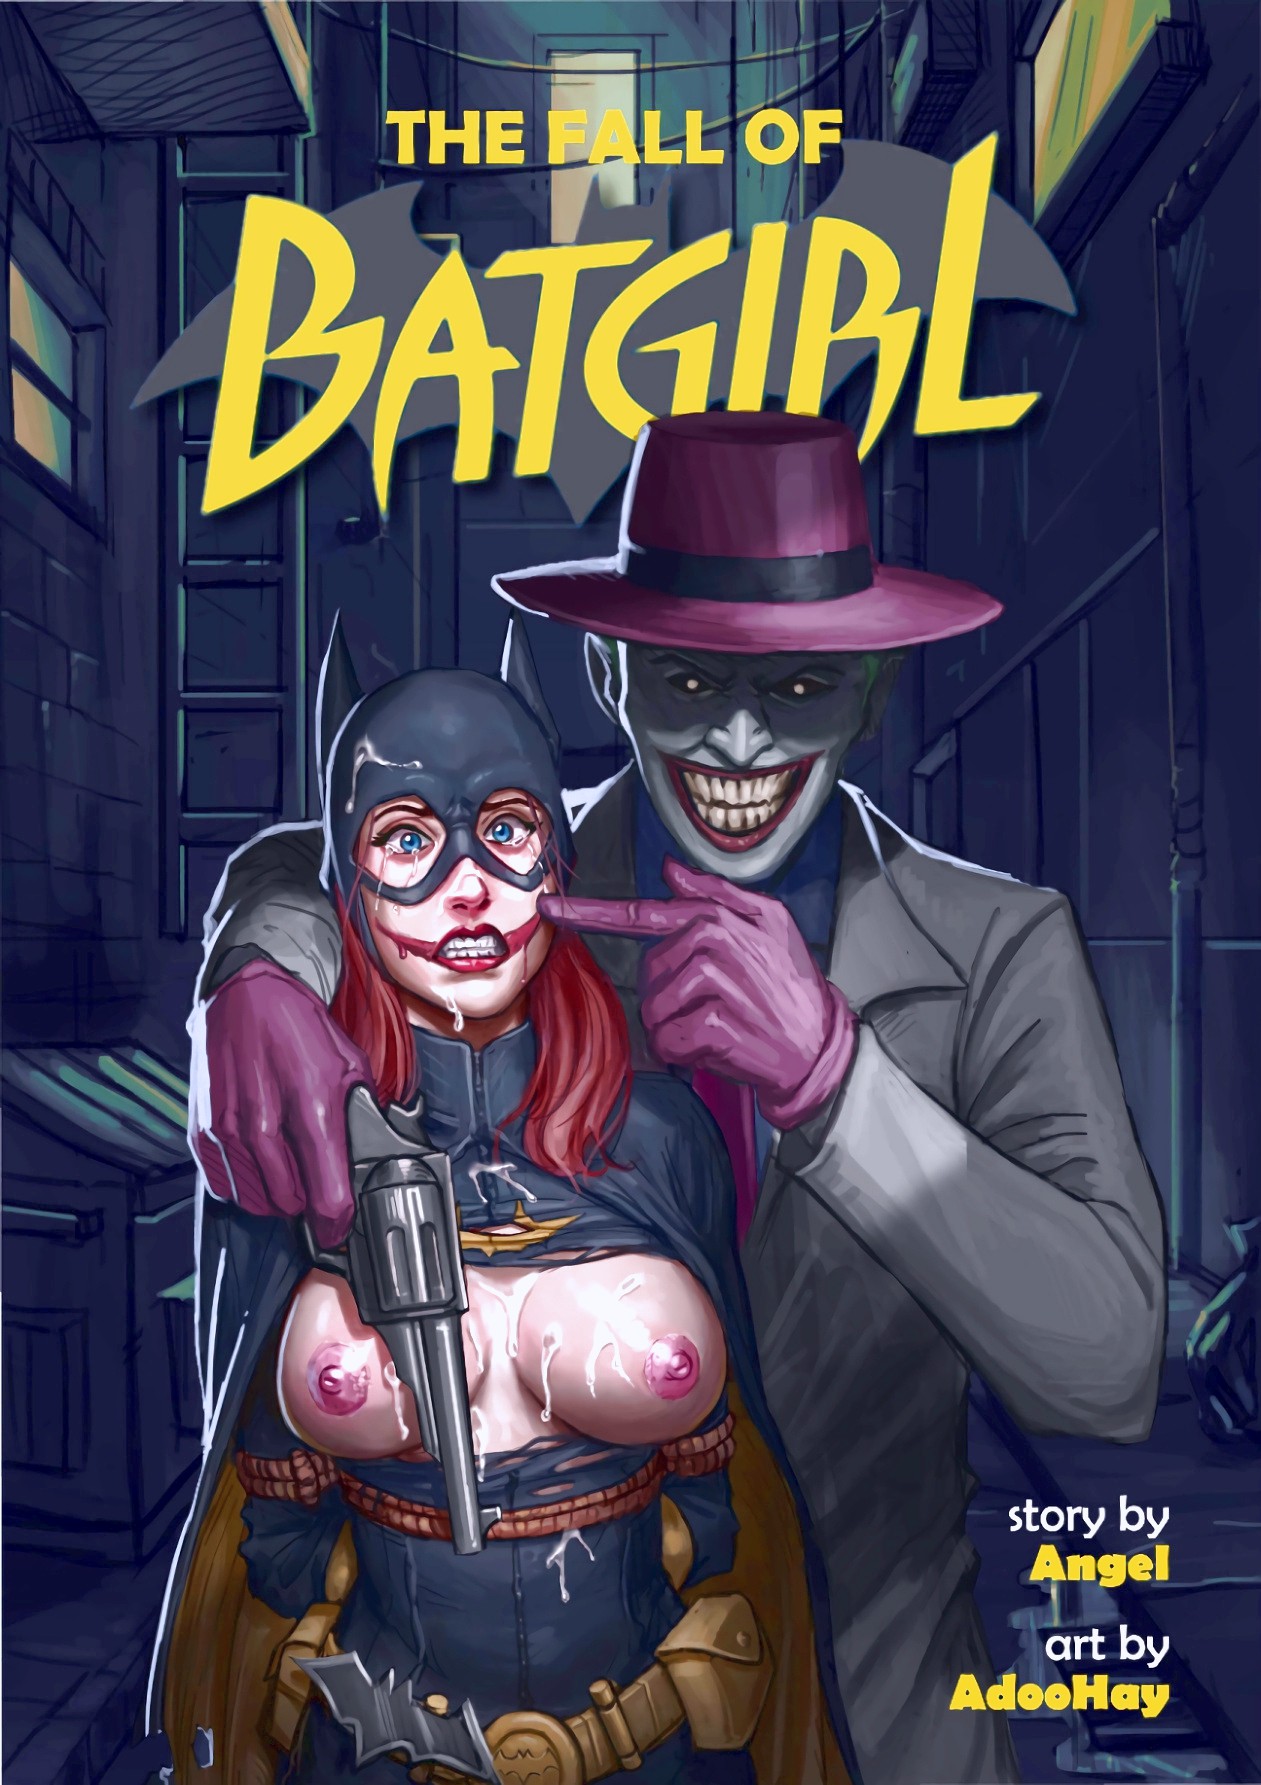 Porn batgirl comic